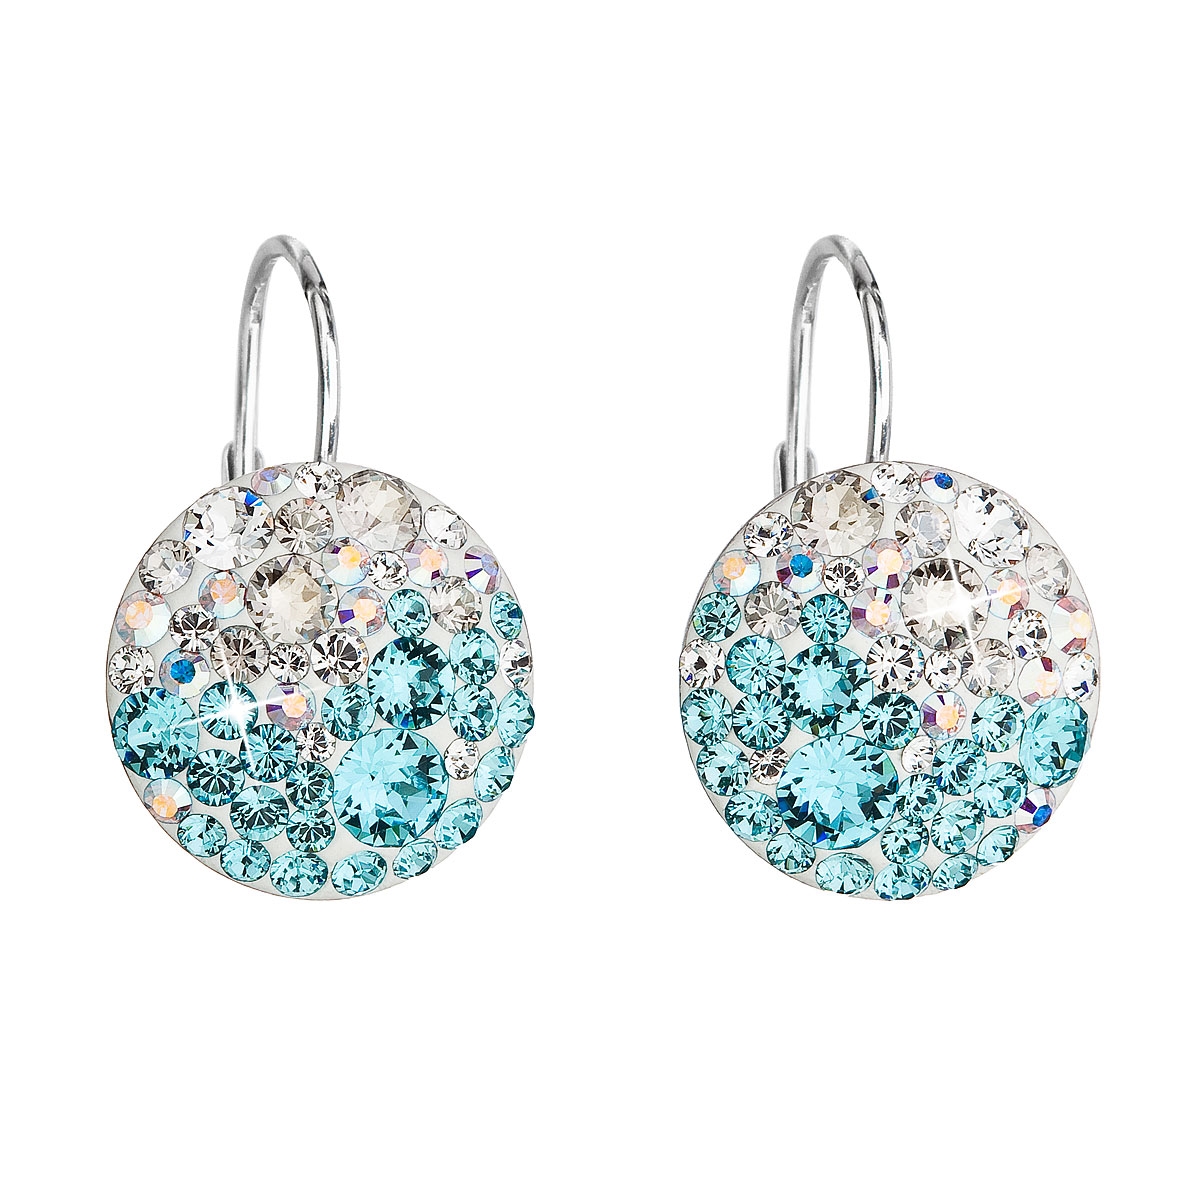 Strieborné náušnice s kryštálmi Crystals from Swarovski® Light Turquoise